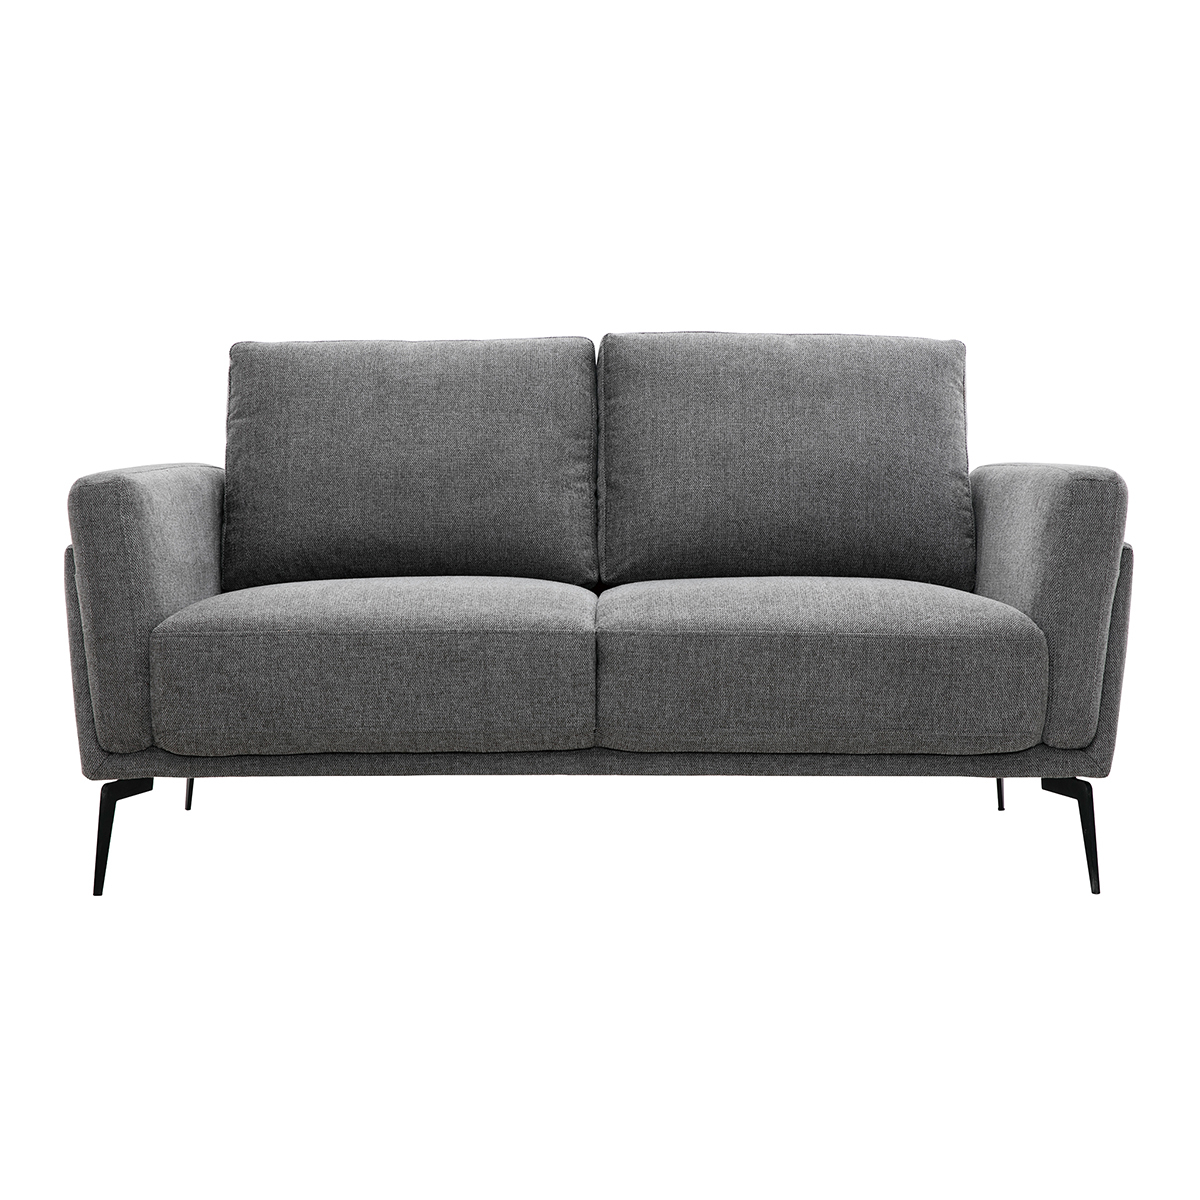 Canapé design 2 places en tissu effet velours texturé gris MOSCO vue1